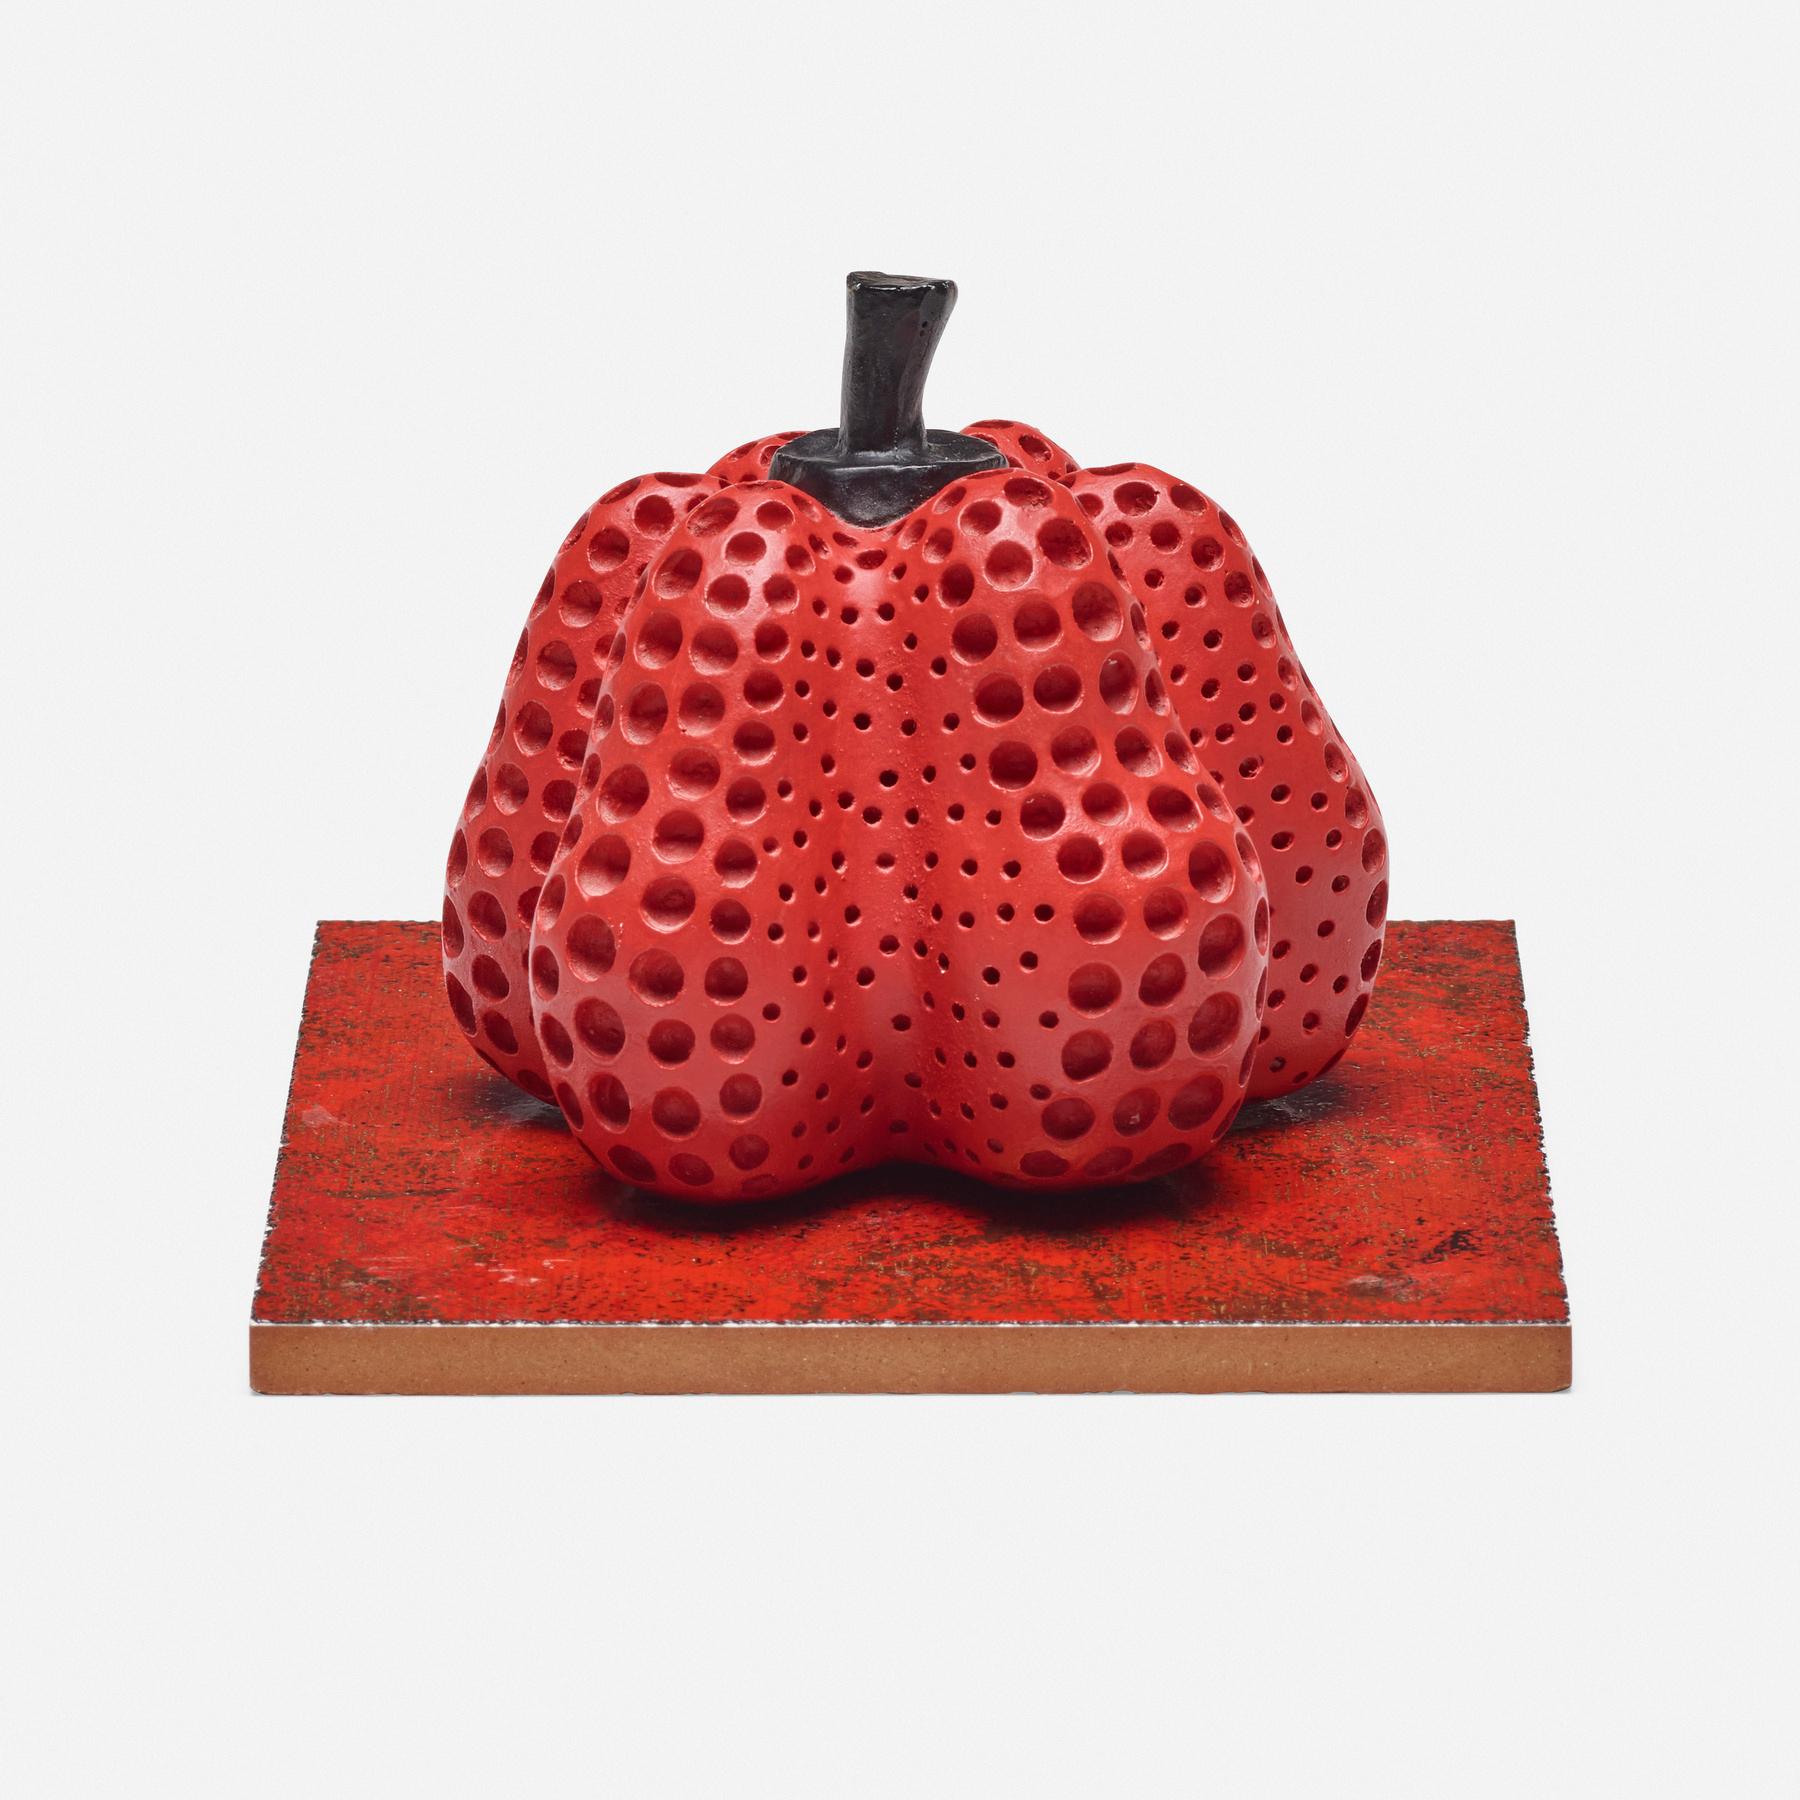 Original Limited Edition 7/30 handsignierte und nummerierte Pumpkin-Skulptur (Rot) in limitierter Auflage – Mixed Media Art von Yayoi Kusama